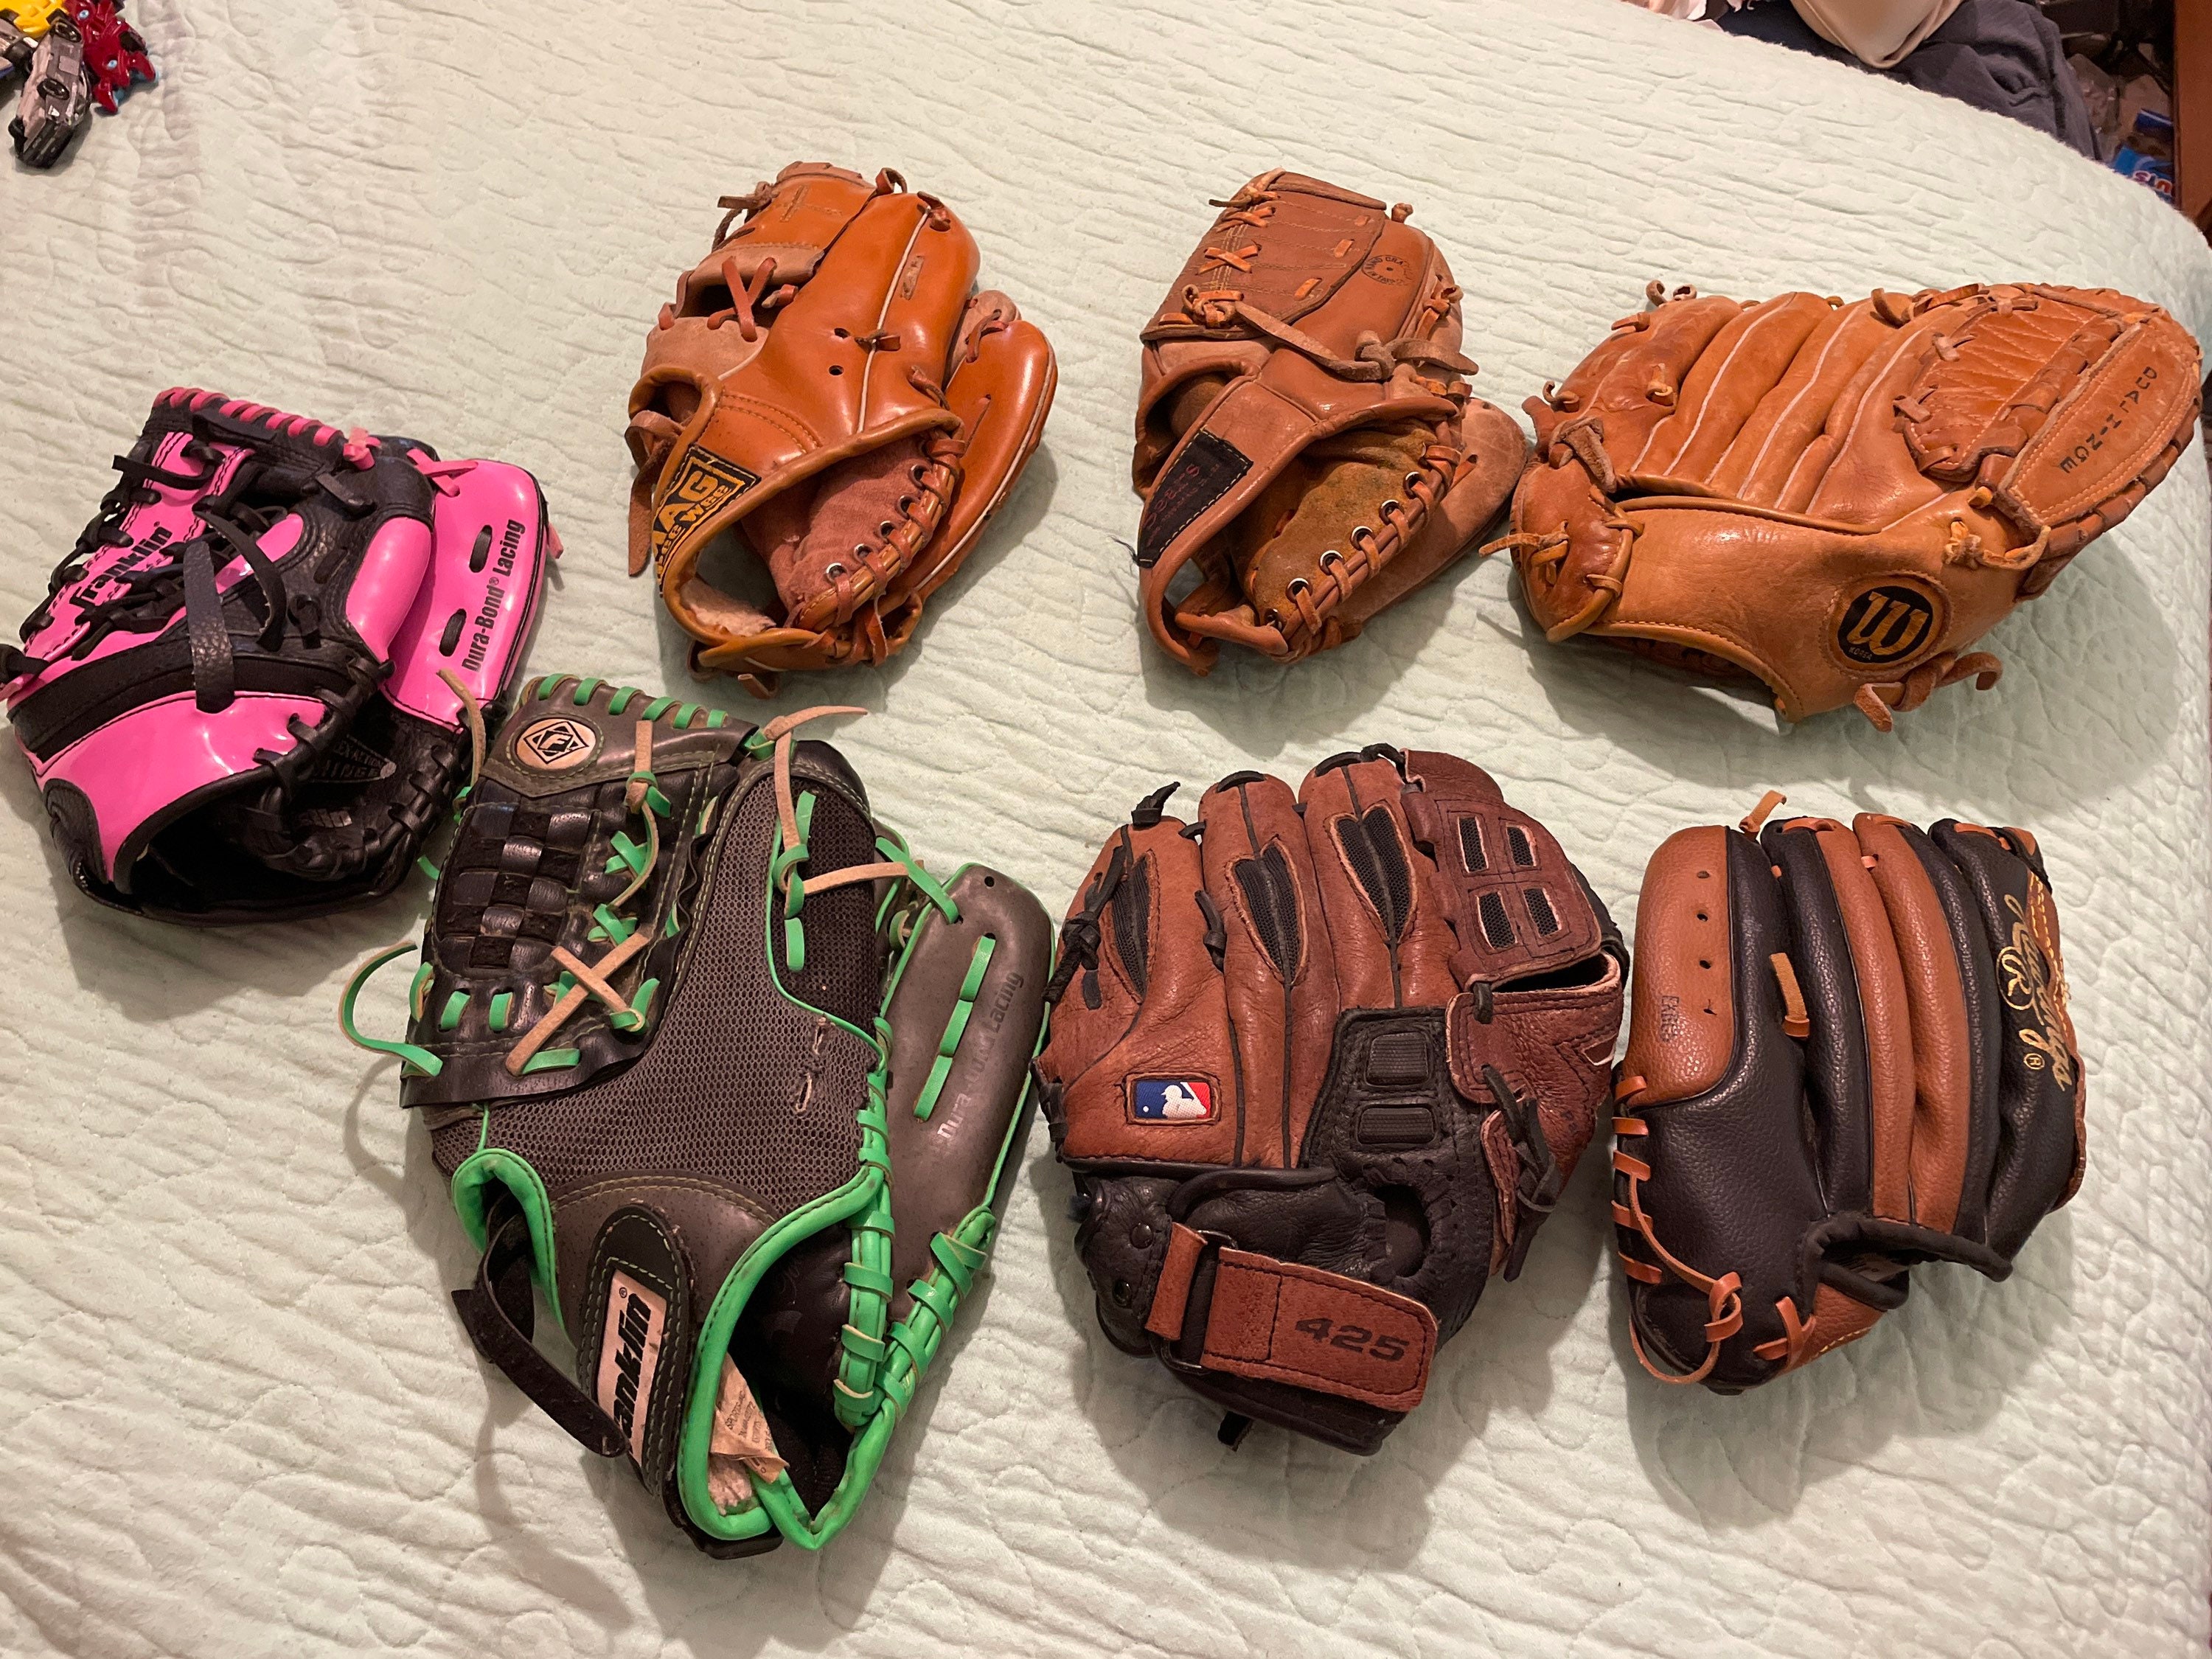 Assorted Baseball Gloves -